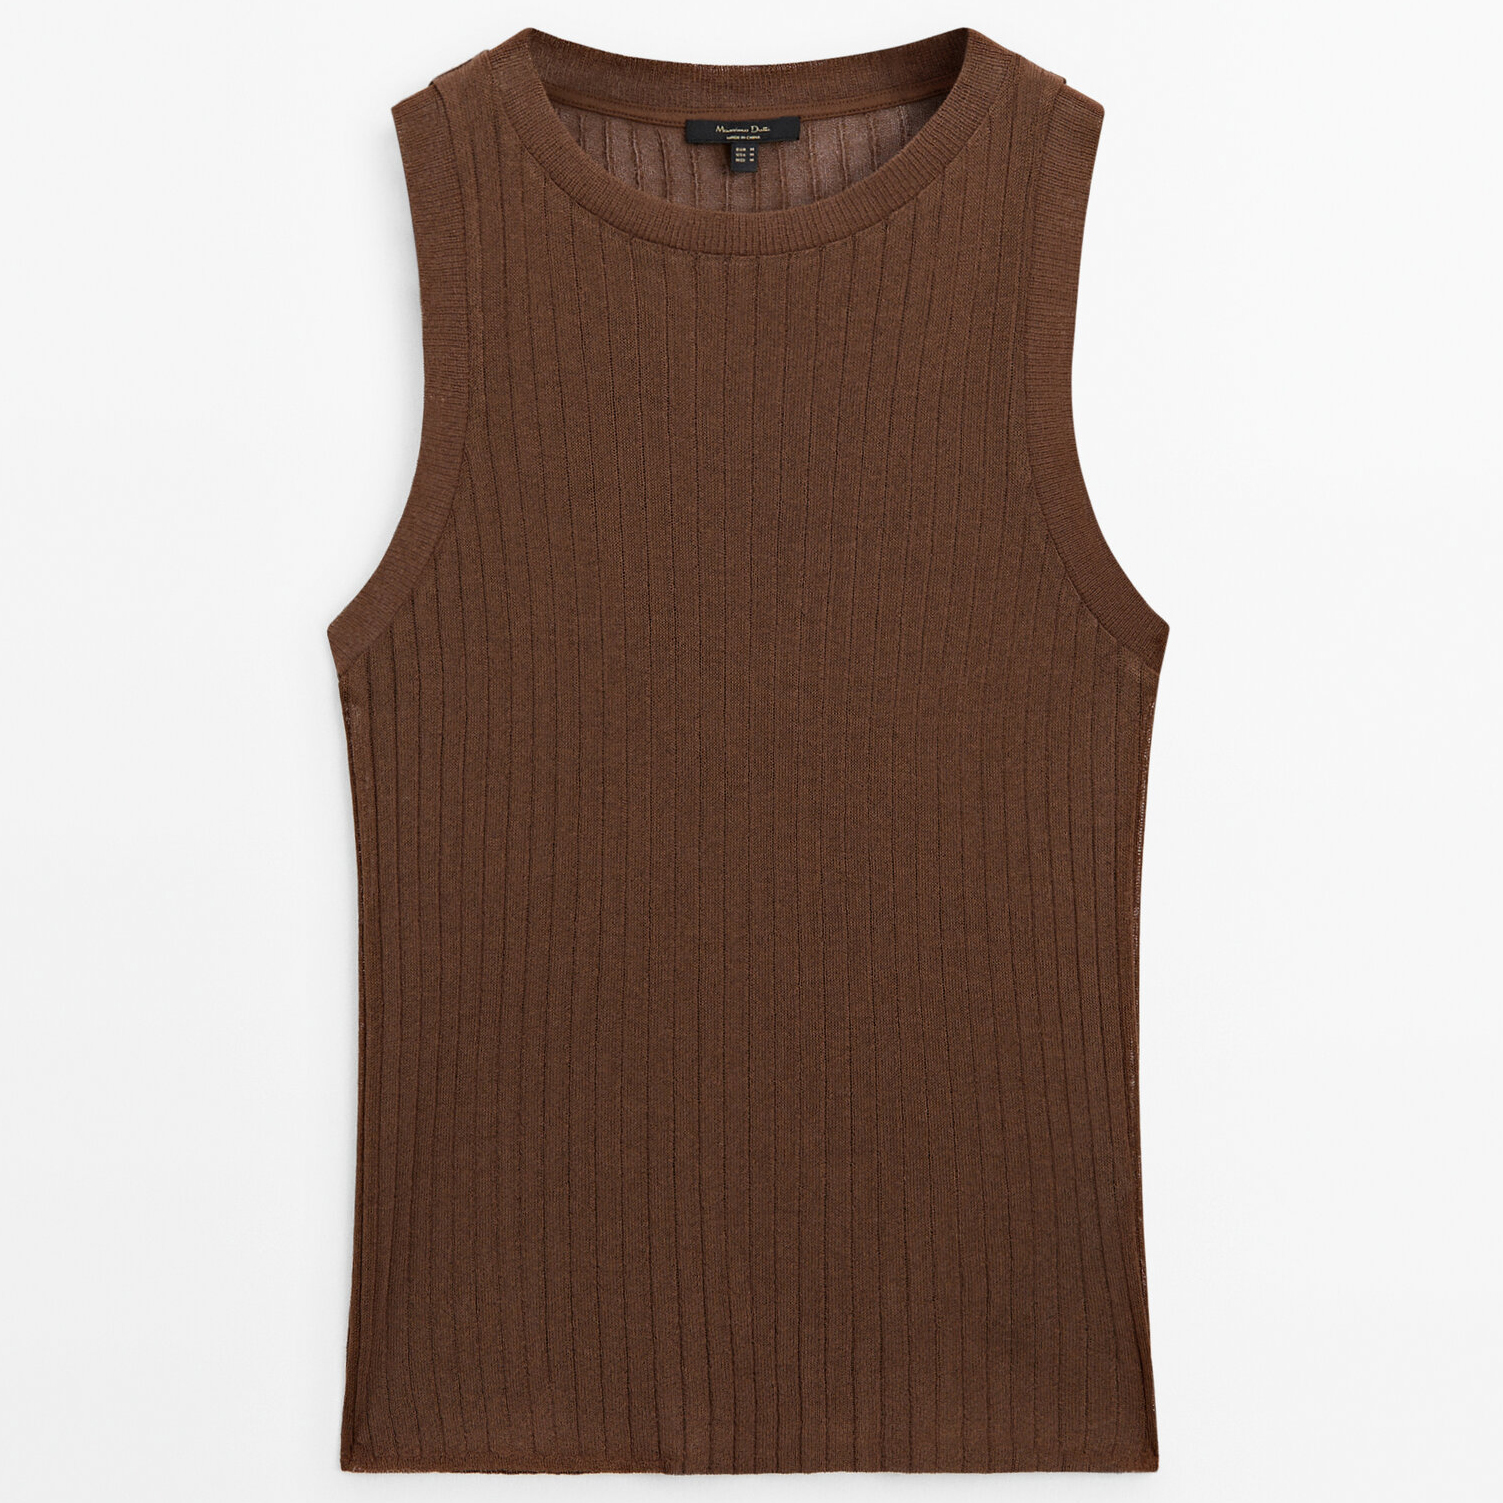 Топ Massimo Dutti Sleeveless Open-knit, коричневый женский шифоновый топ без рукавов однотонный пуловер с круглым вырезом приталенный жилет офисная повседневная одежда весна лето 2022